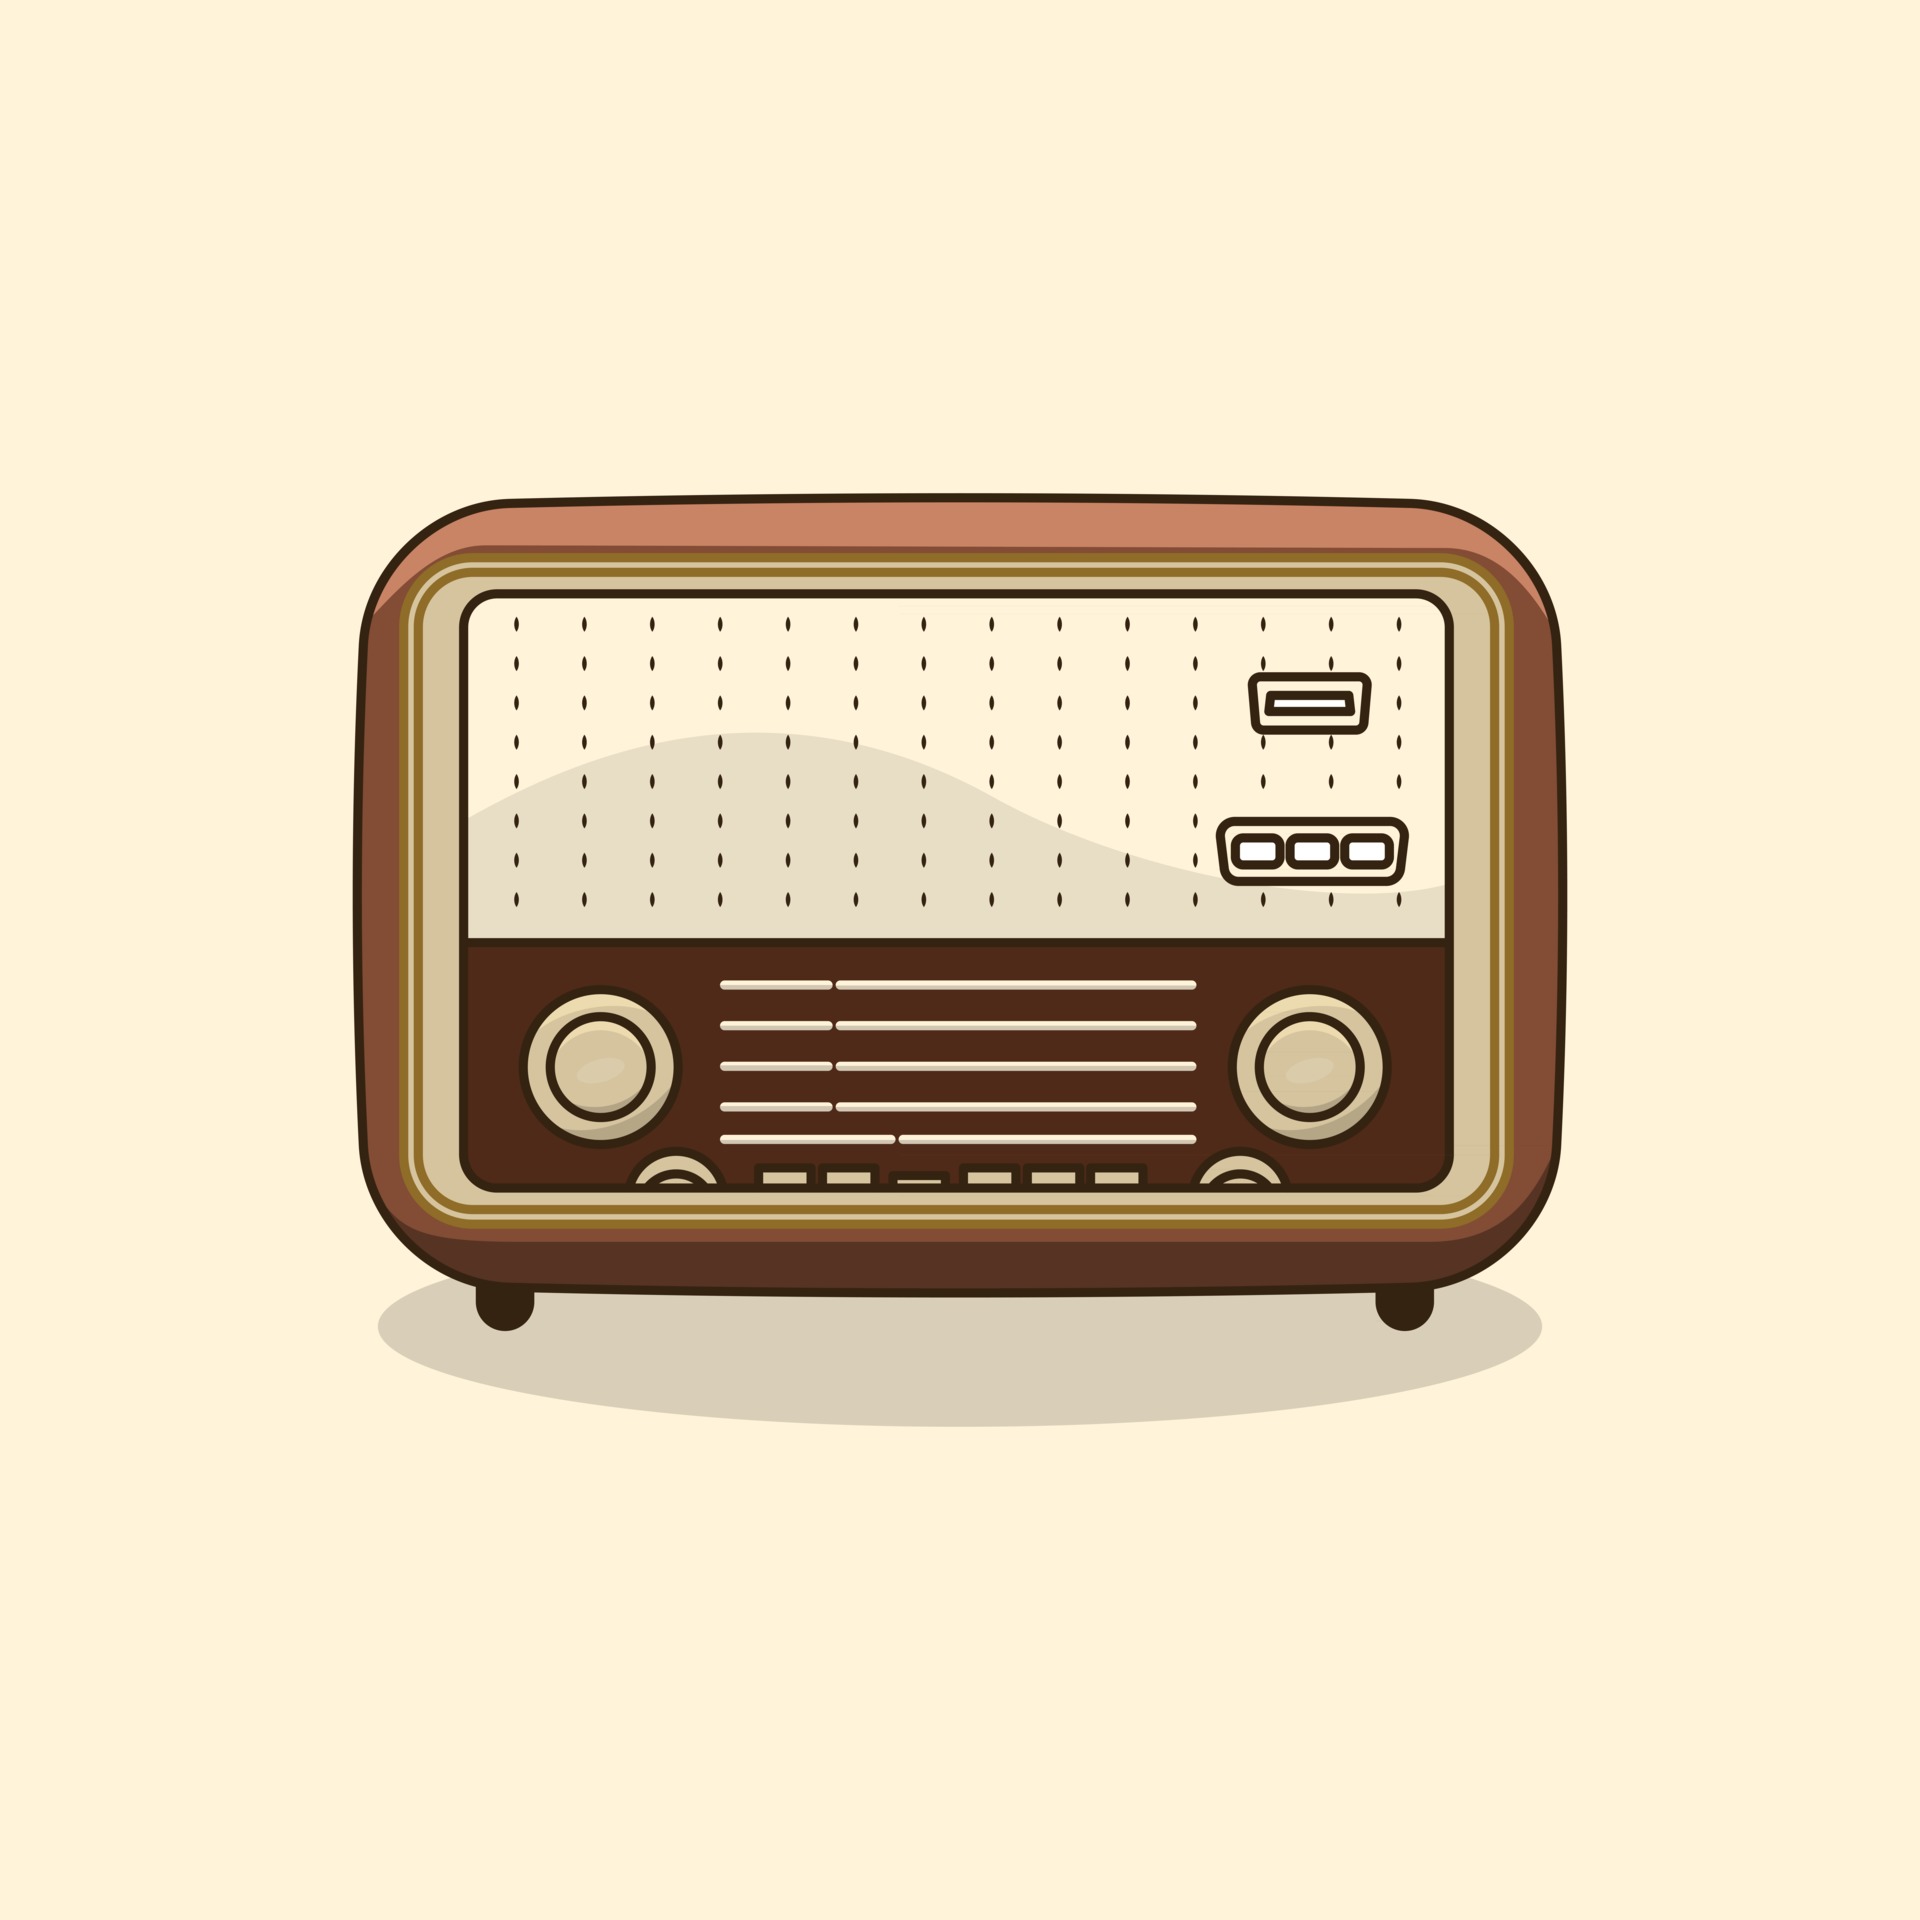 https://static.vecteezy.com/system/resources/previews/002/514/311/original/radio-retro-vintagae-flat-design-old-radio-vintage-retro-vibes-vector.jpg